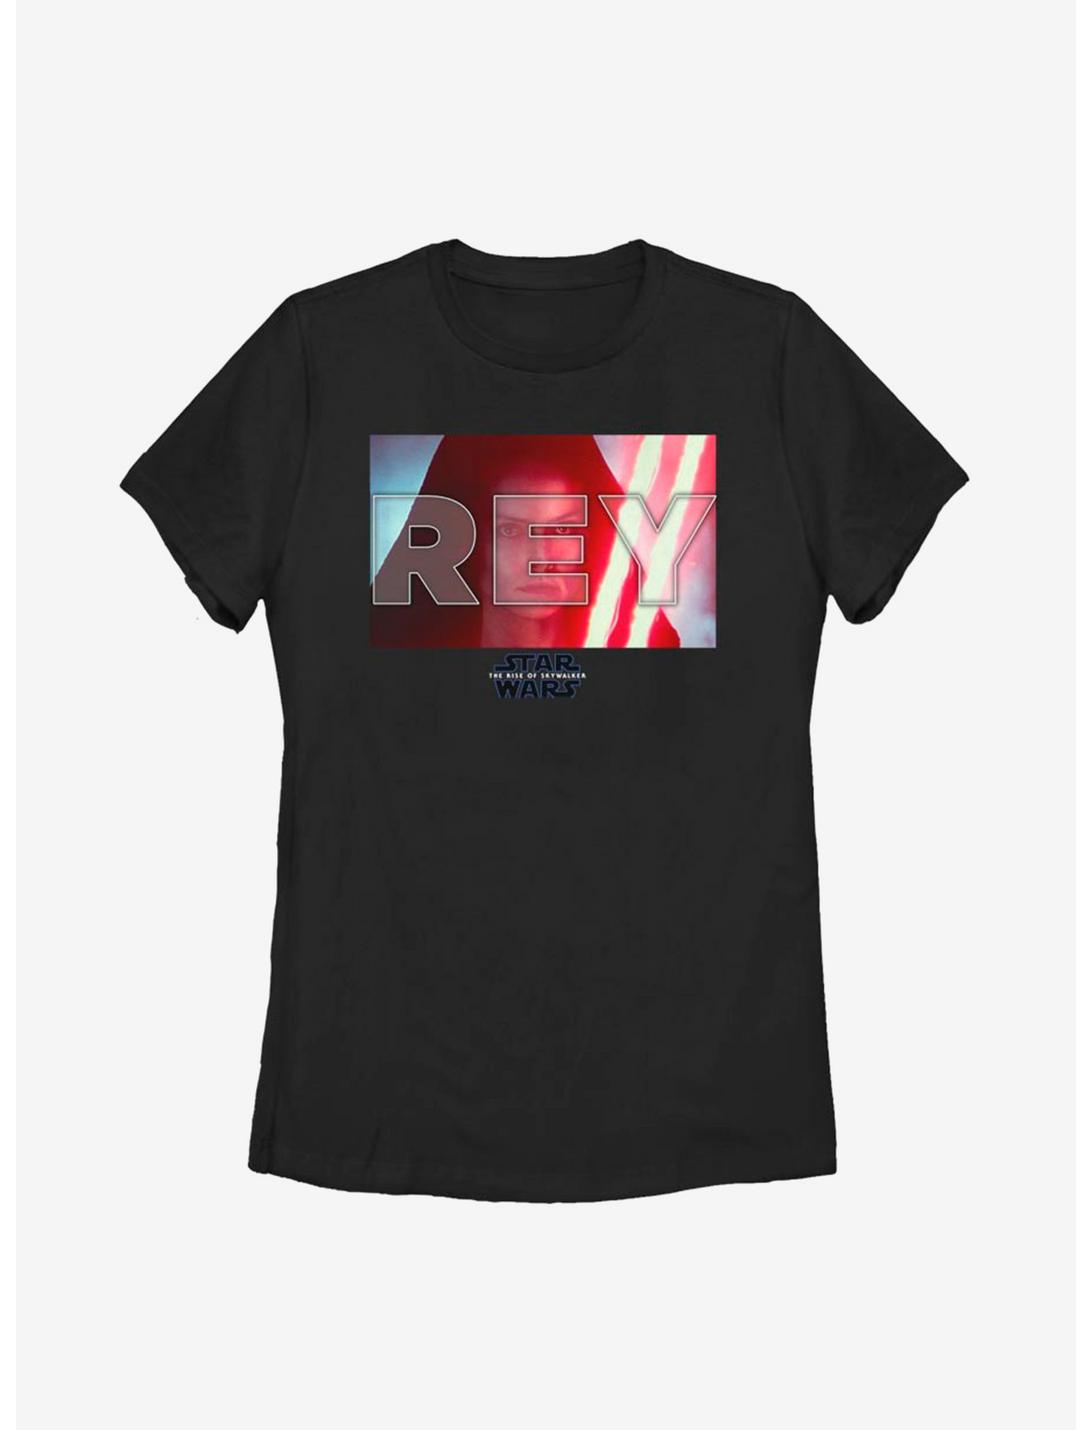 Star Wars Episode IX The Rise Of Skywalker Rey Red Saber Womens T-Shirt, BLACK, hi-res